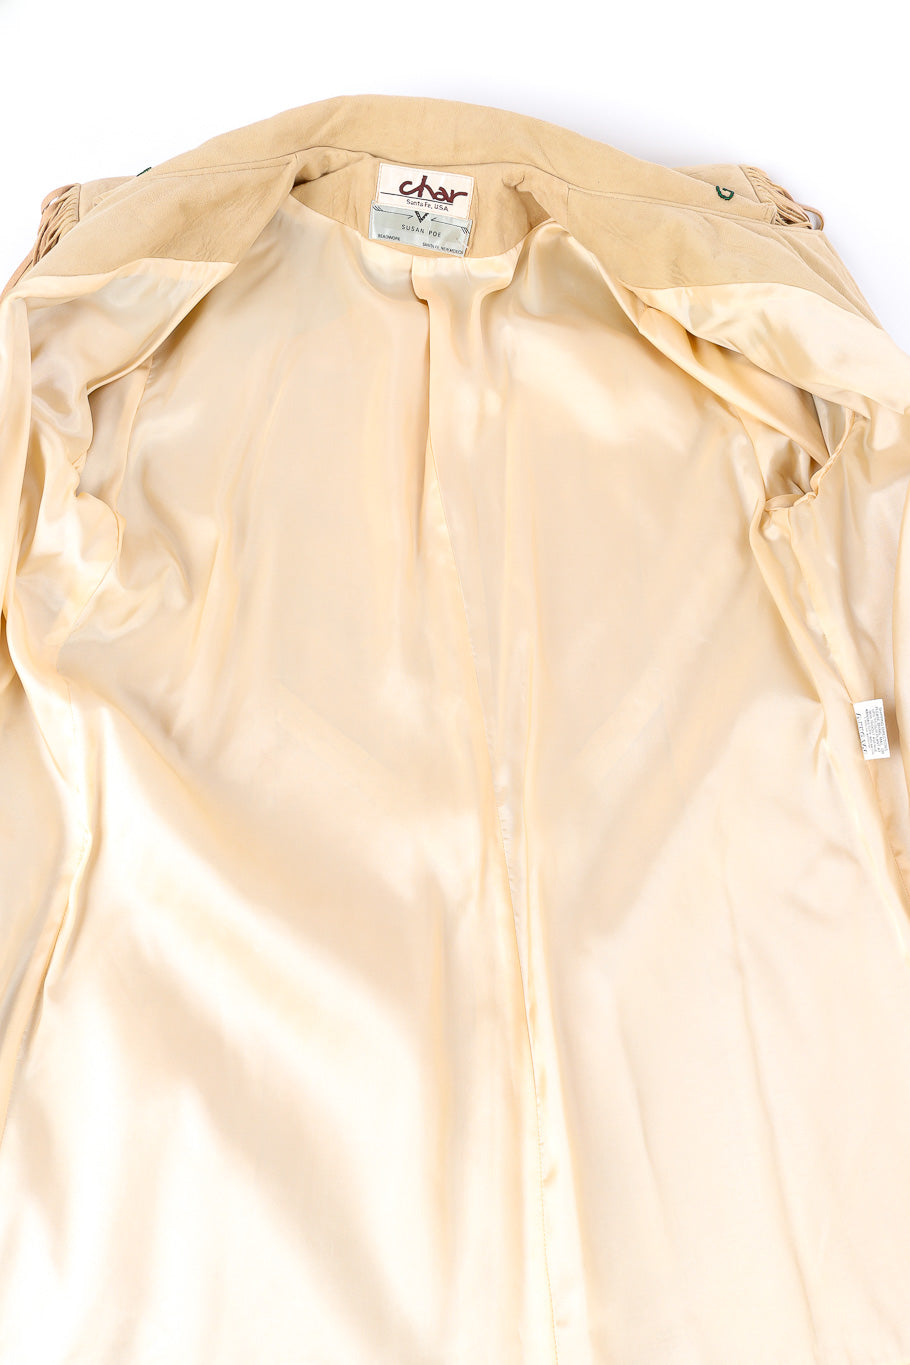 Vintage Char suede fringe jacket inner lining @Recessla